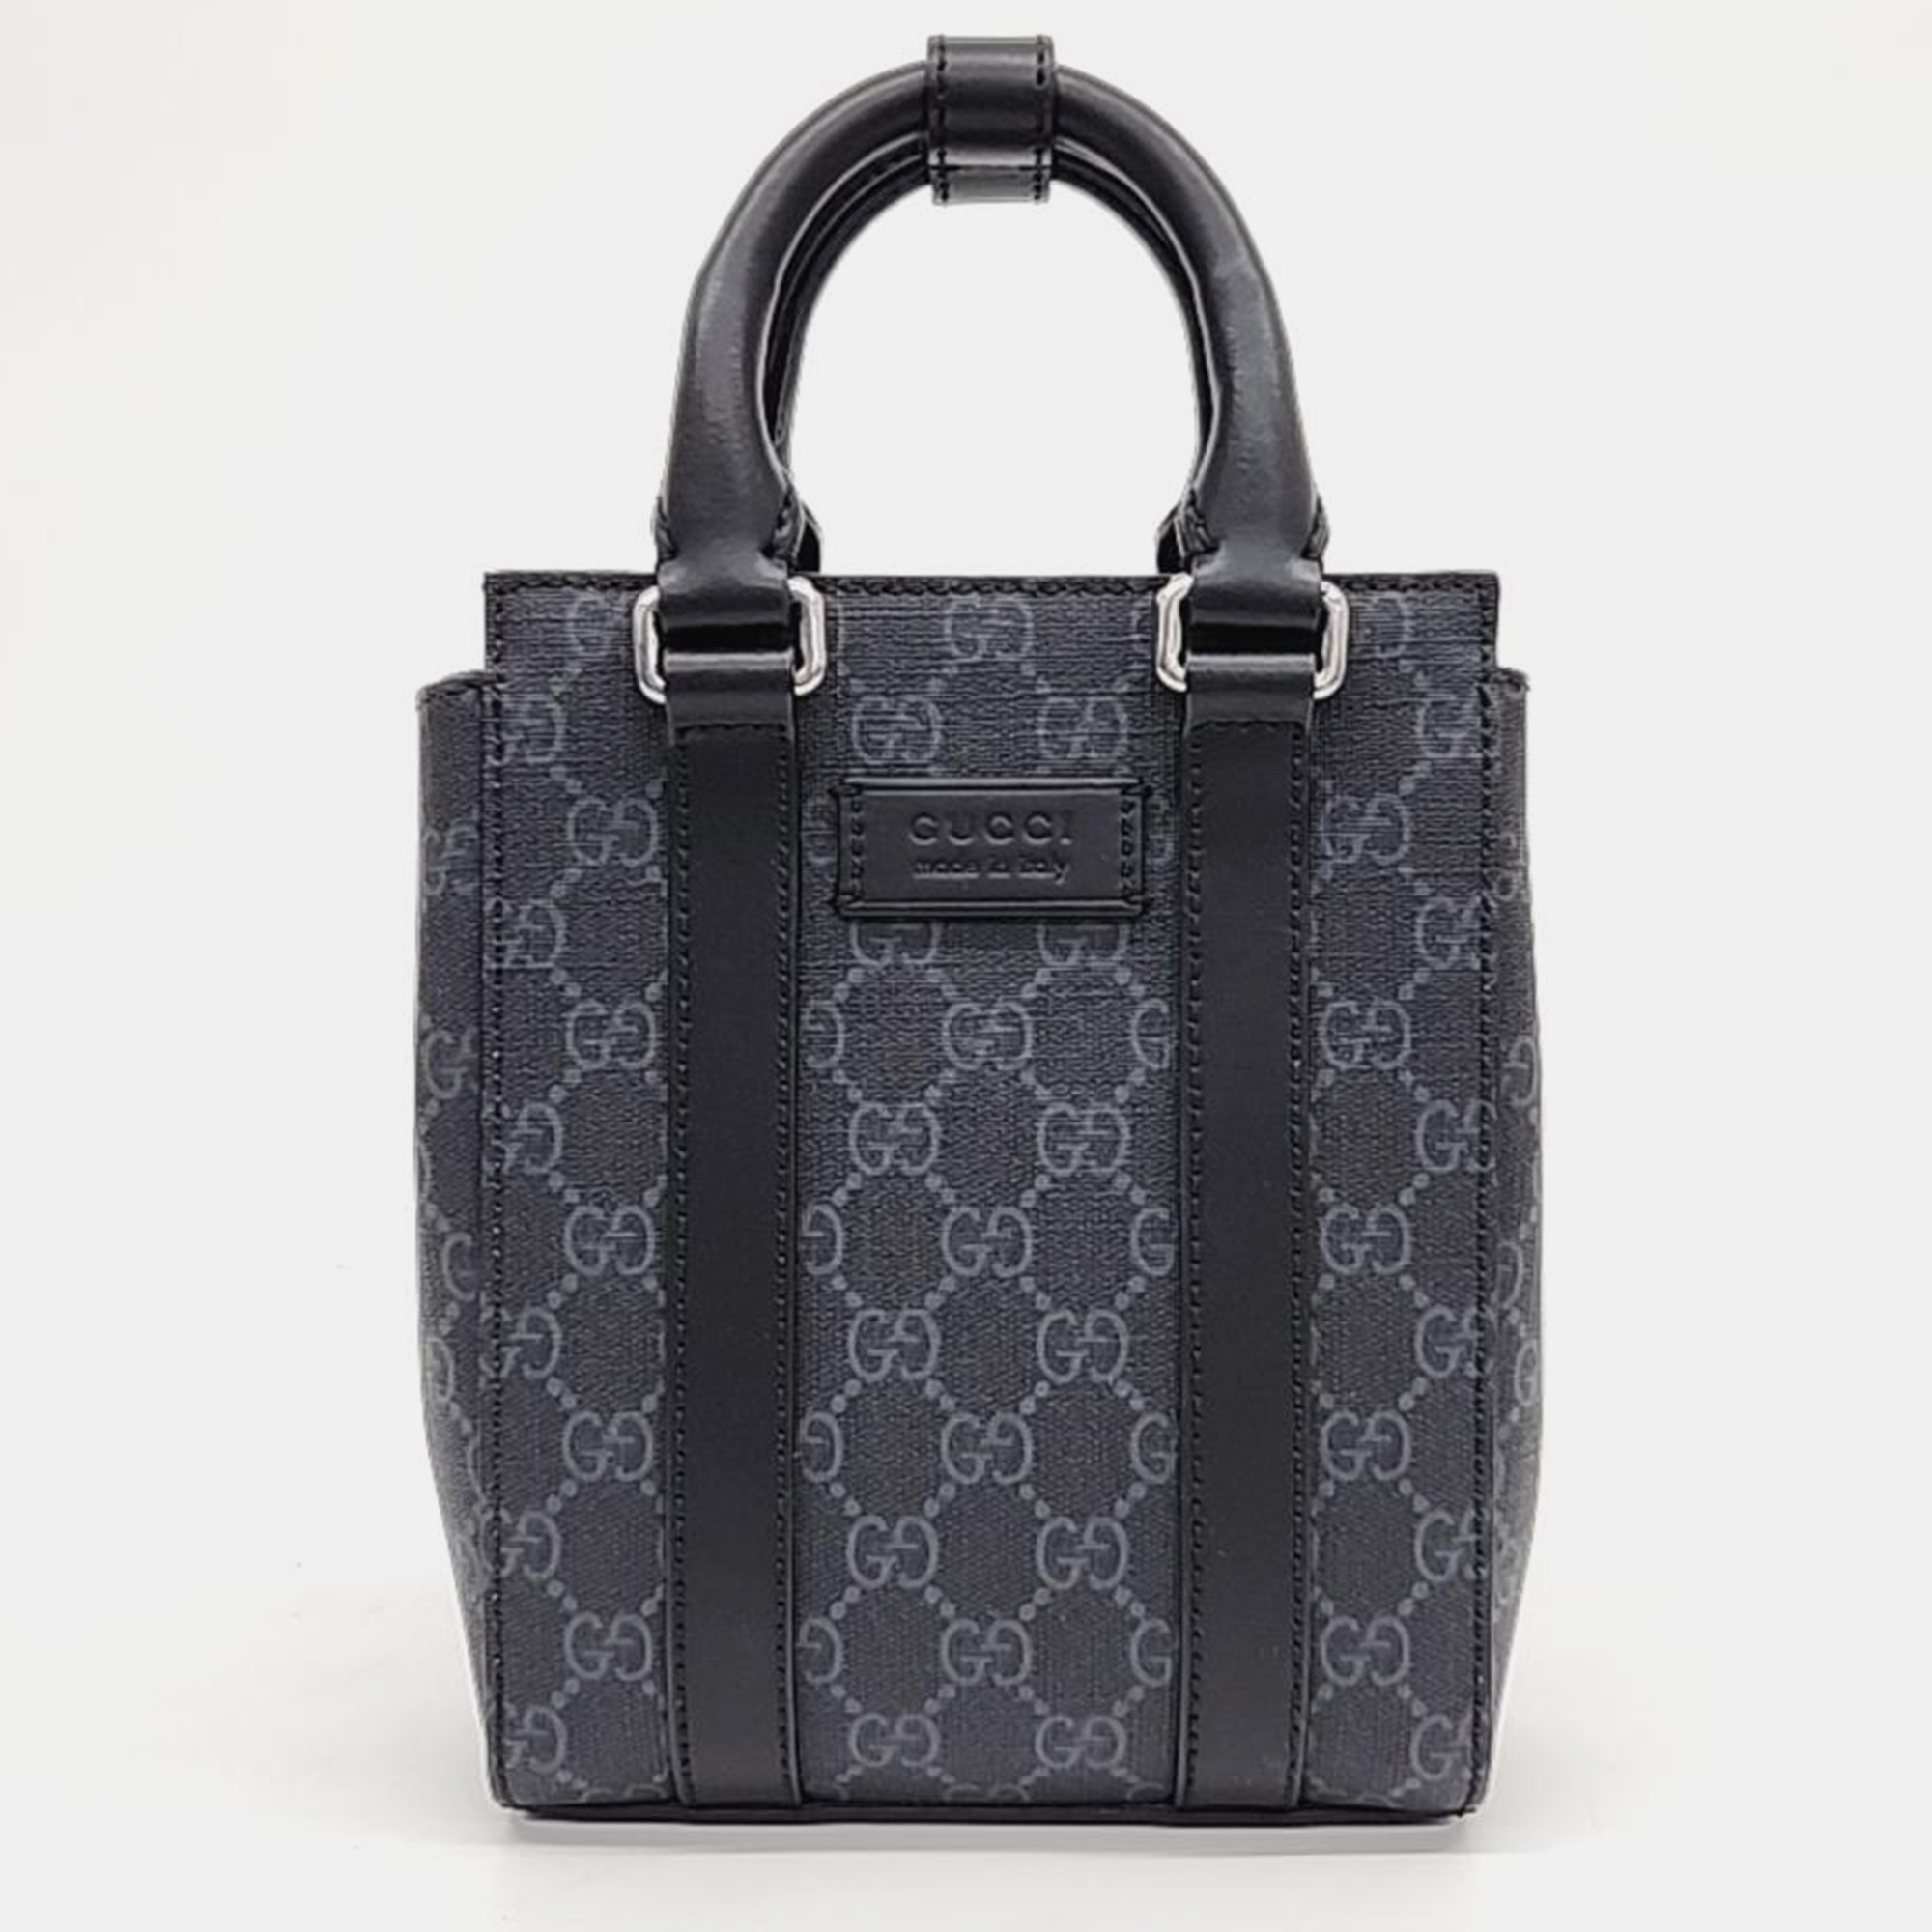 Gucci black pvc and leather supreme mini tote bag